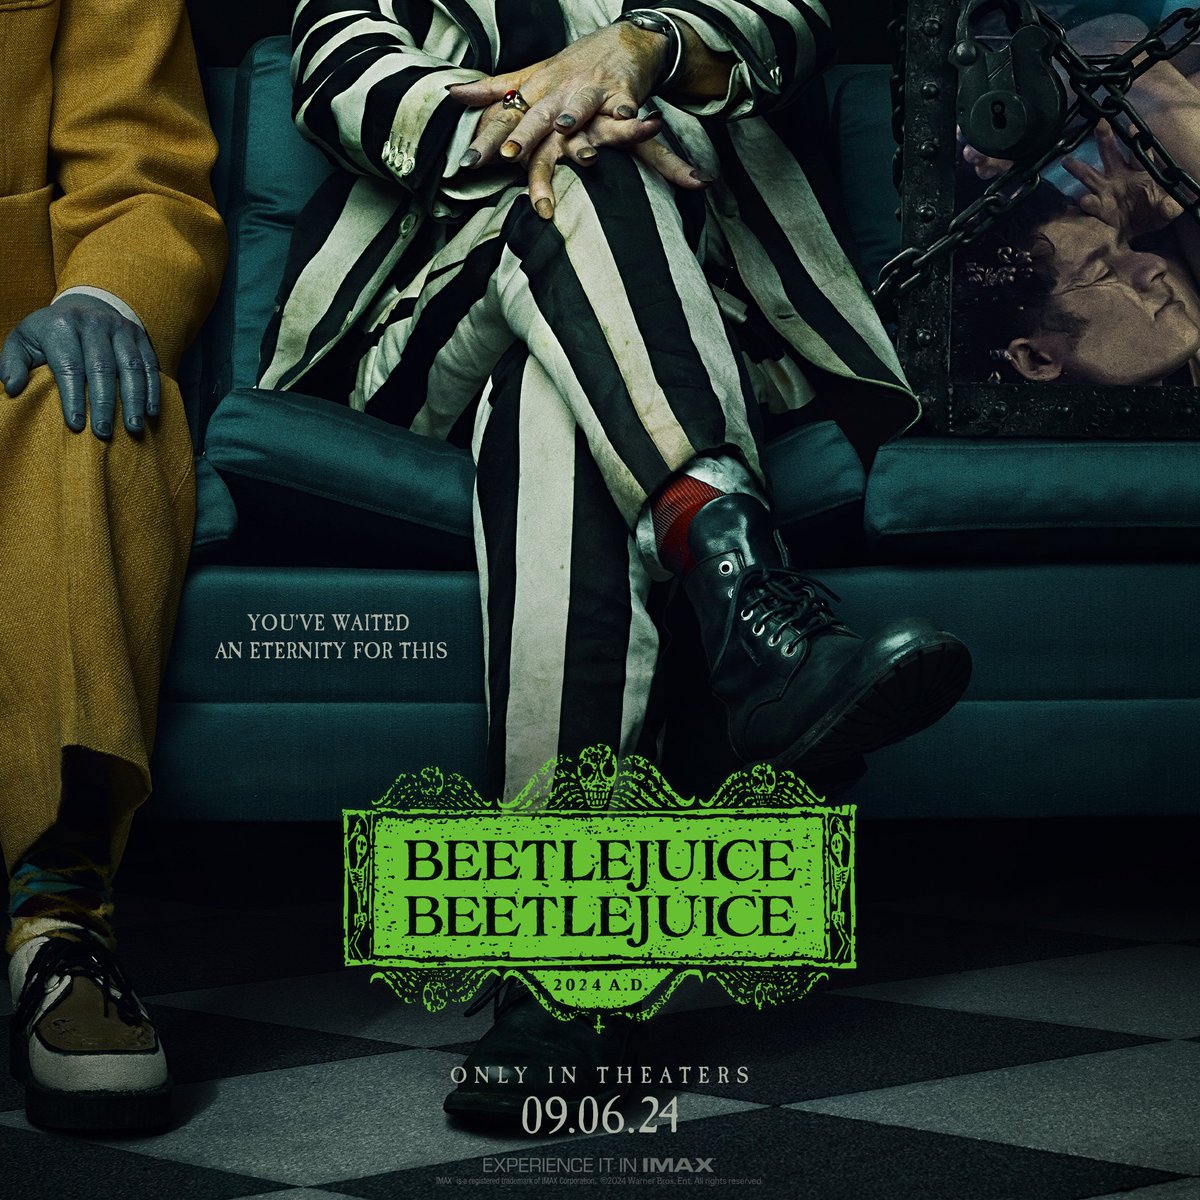 Confira o novo pôster de 'Beetlejuice Beetlejuice', sequência do clássico de 1988, que estreia dia 6 de setembro nos cinemas americanos via @wbpictures. Dirigido novamente por Tim Burton, o filme traz de volta nomes como Michael Keaton, Winona Ryder e Catherine O'Hara no elenco.